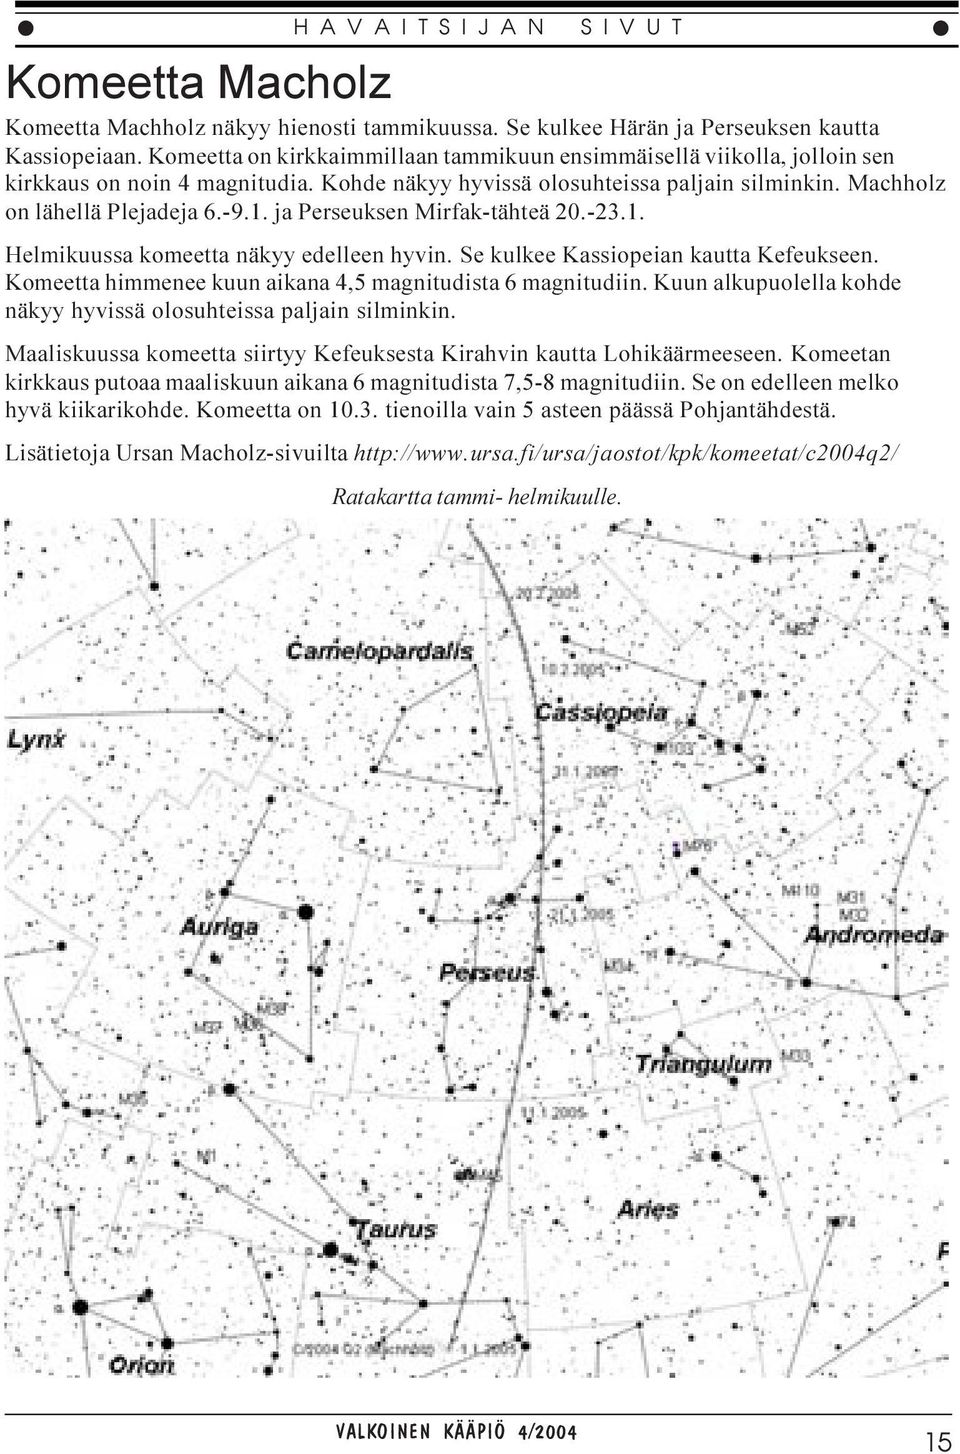 ja Perseuksen Mirfak-tähteä 20.-23.1. Helmikuussa komeetta näkyy edelleen hyvin. Se kulkee Kassiopeian kautta Kefeukseen. Komeetta himmenee kuun aikana 4,5 magnitudista 6 magnitudiin.